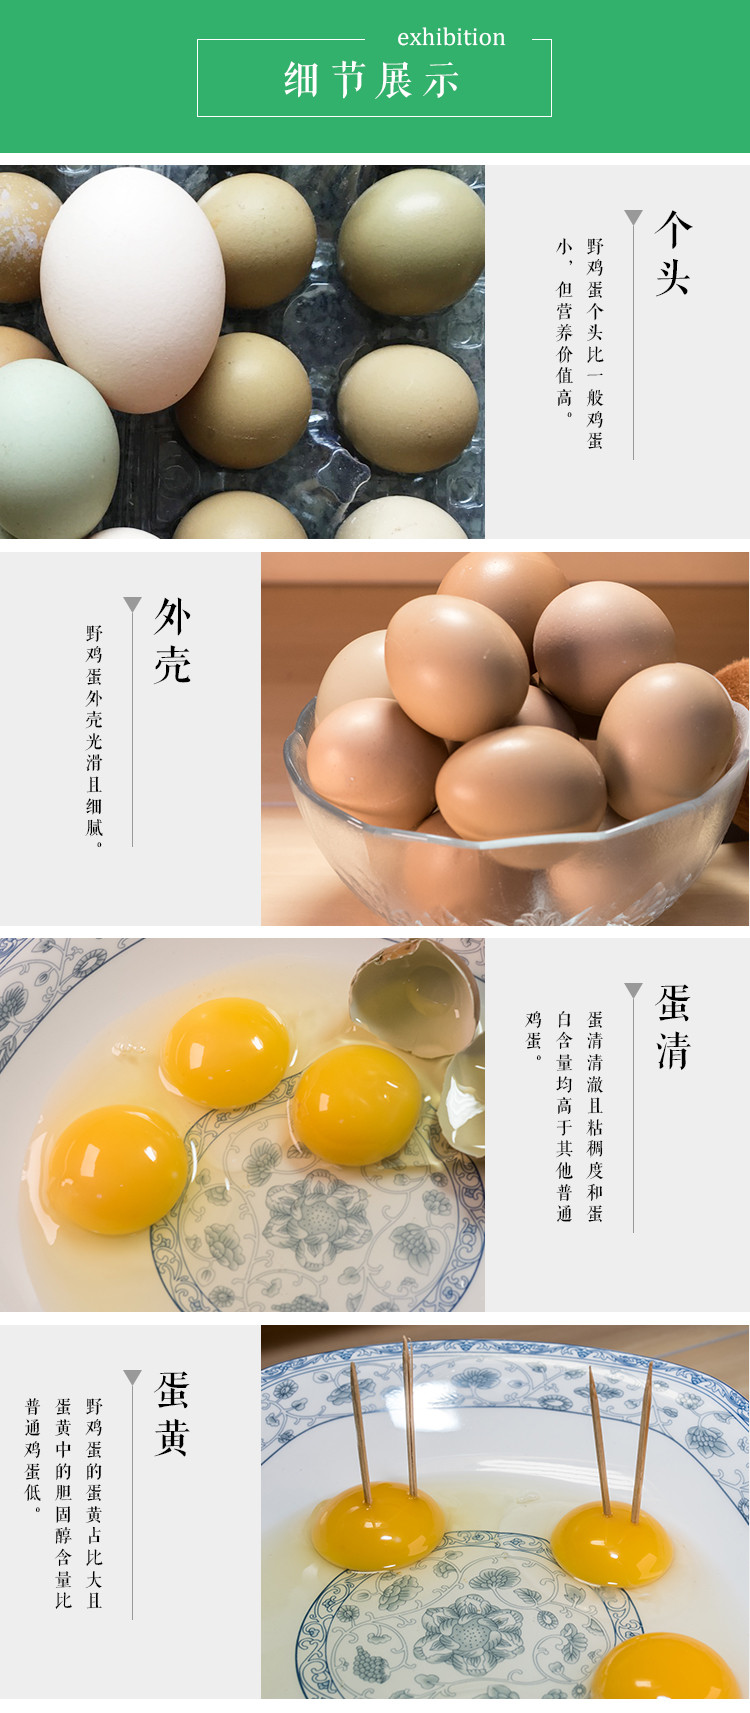 宜昌三峡特产] 橘树林新品上市 野鸡蛋50枚包邮